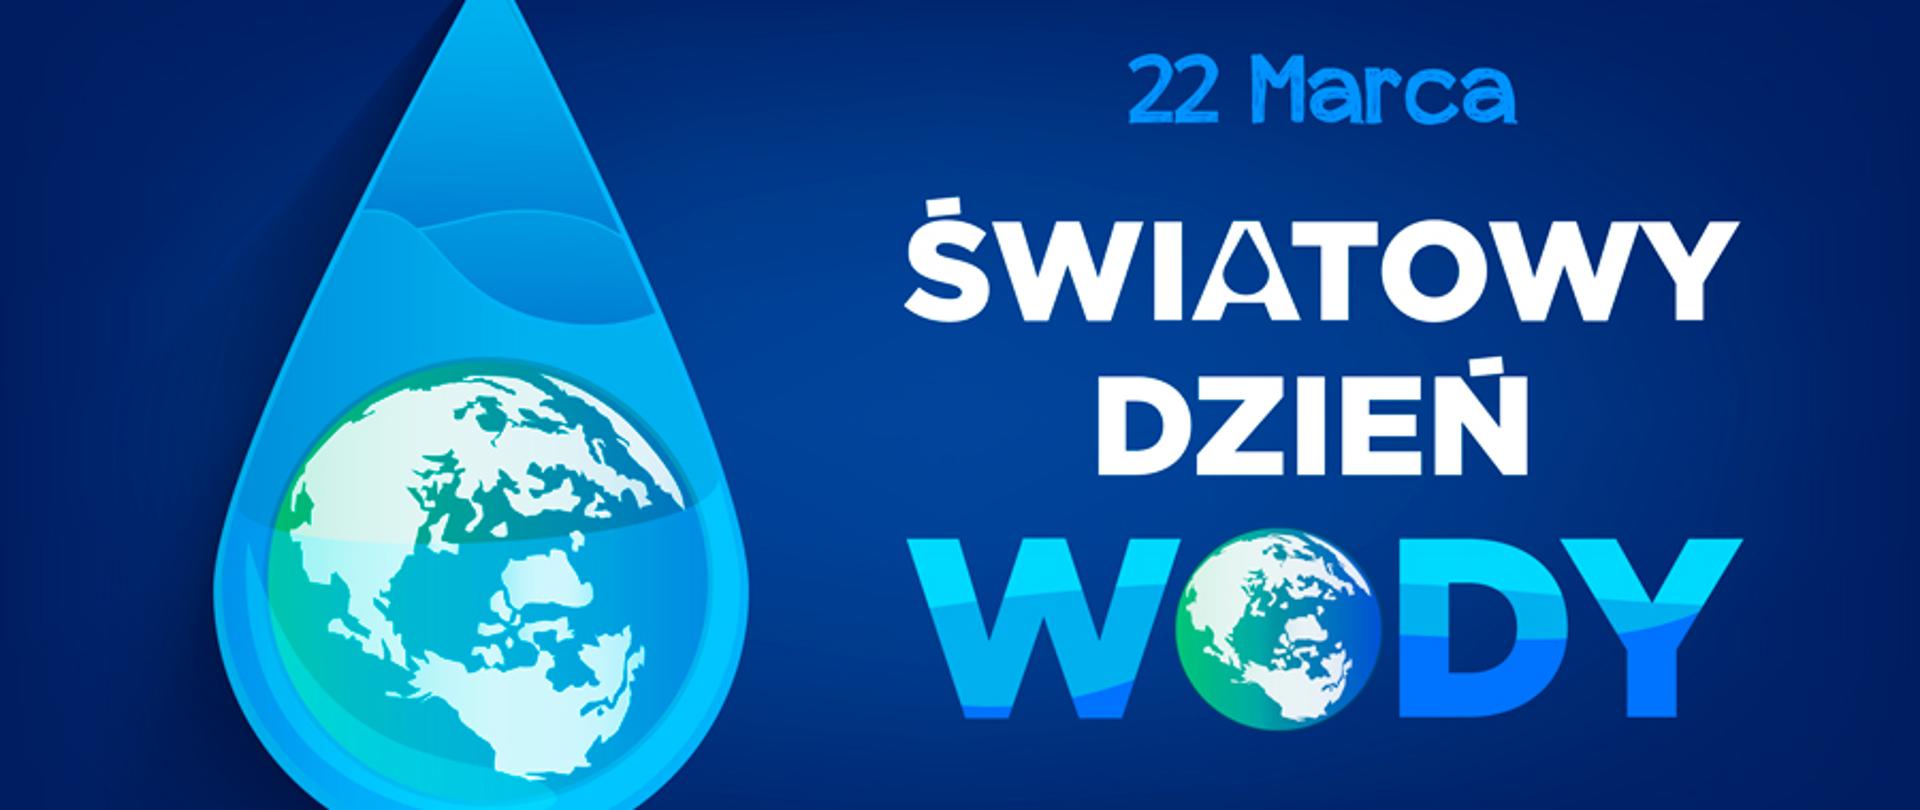 22 marca - Światowy Dzień Wody - Powiatowa Stacja  Sanitarno-Epidemiologiczna w Pucku - Portal Gov.pl